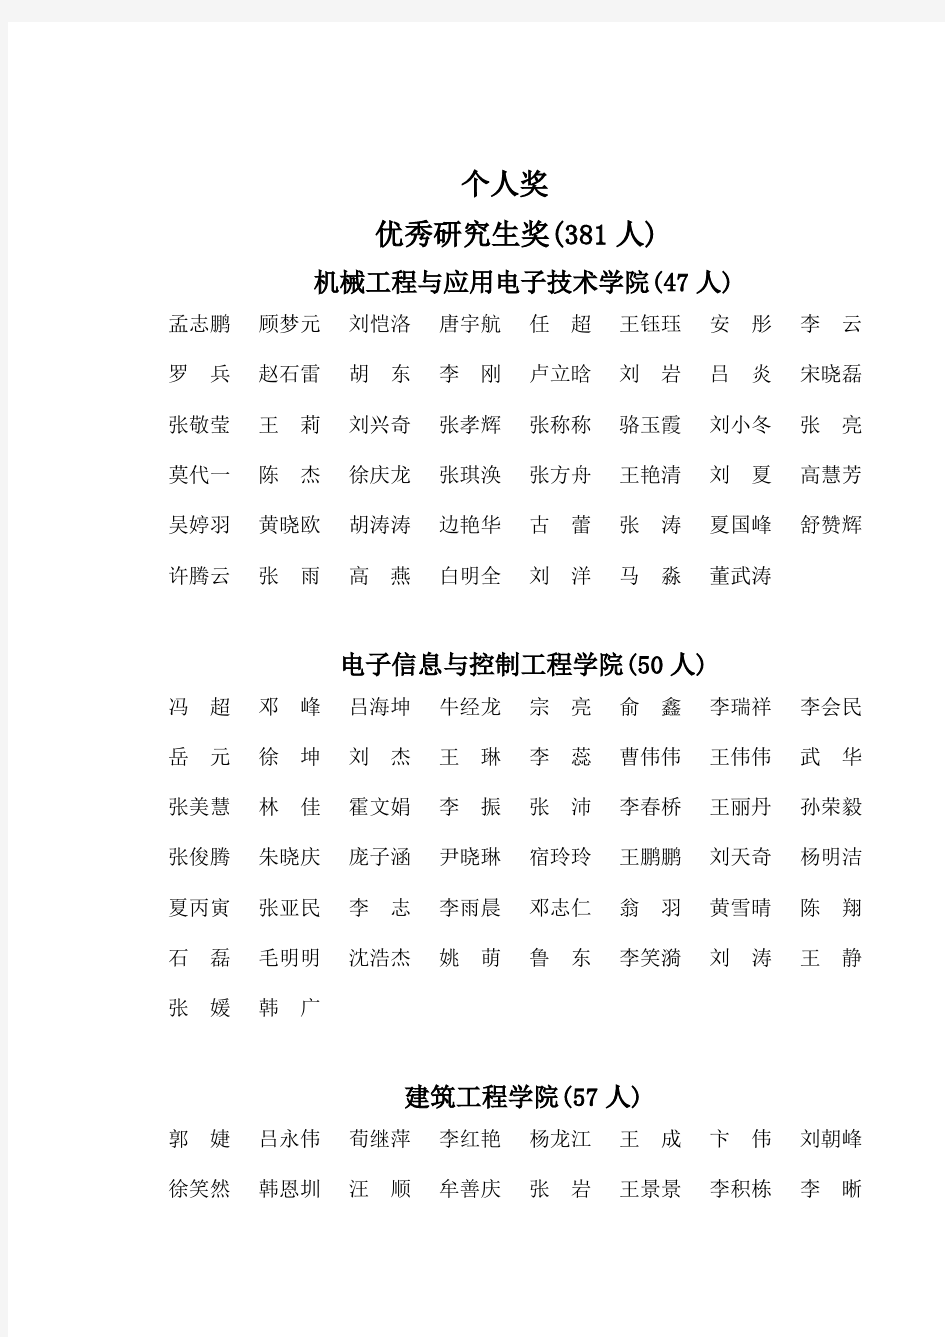 北京工业大学2012-2013学年研究生奖学金获奖公示名单